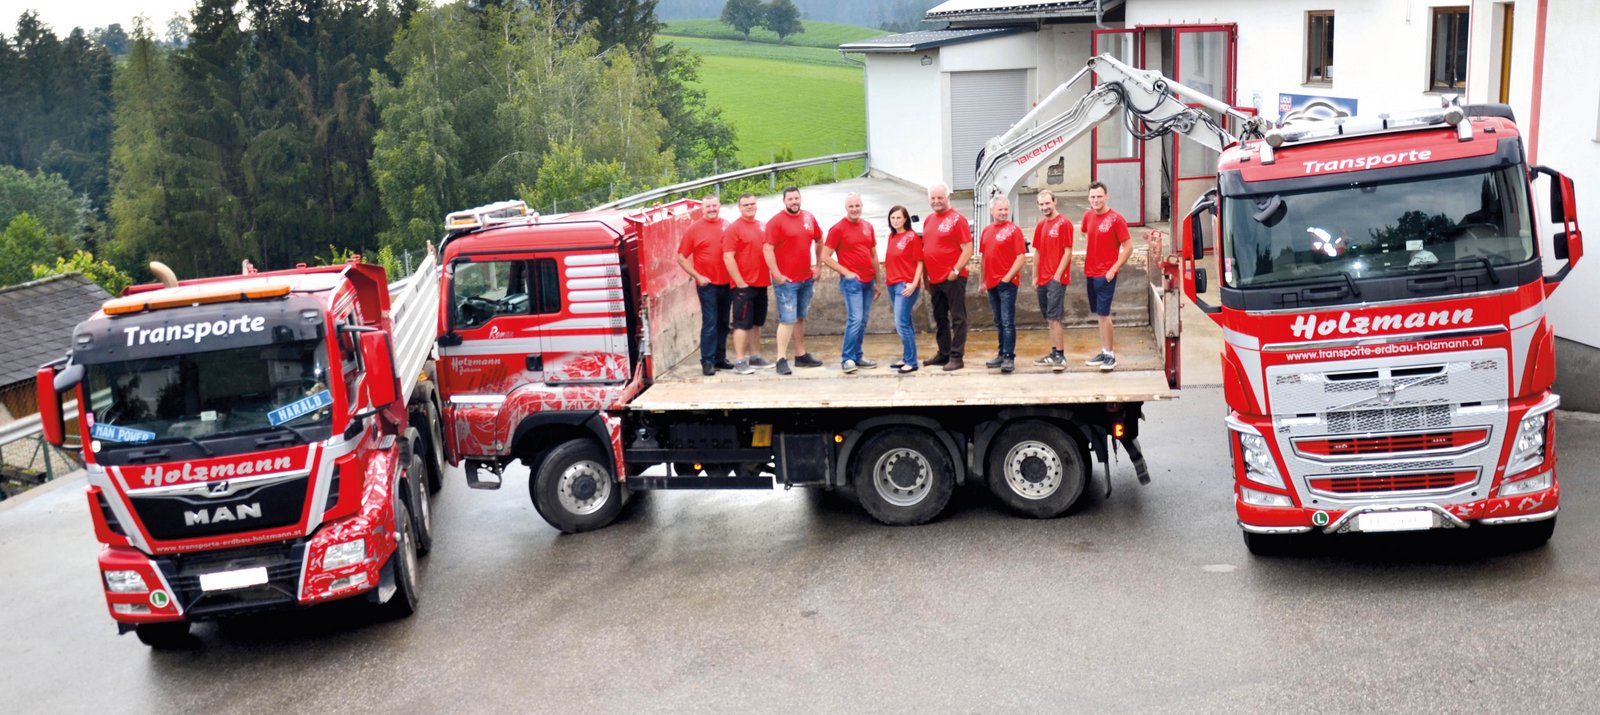 Das Team von Holzmann Erdbau, Transporte, Beton und Handel